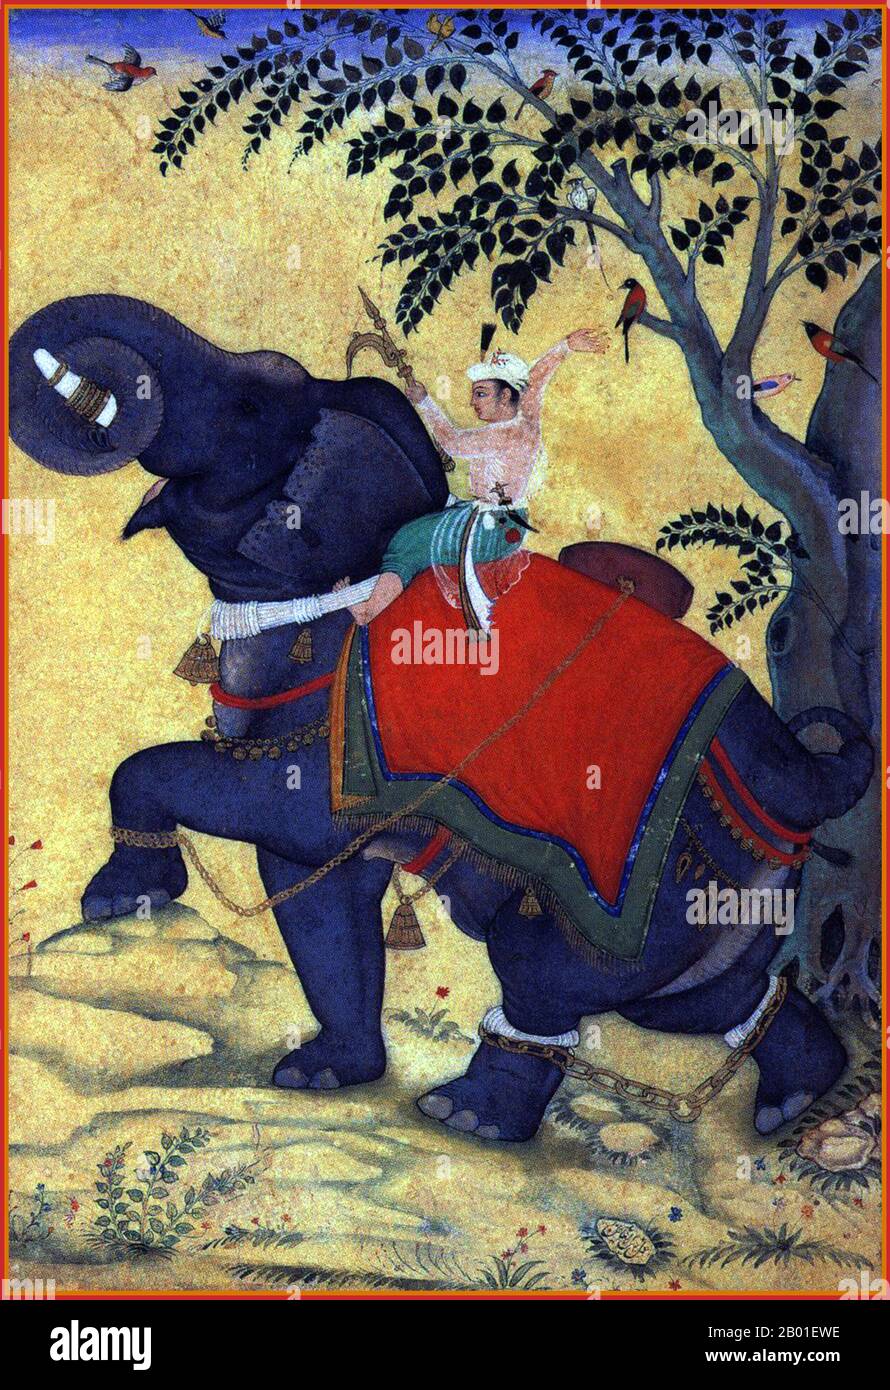 Indien: Der 3. Mogul-Kaiser Akbar (25. Oktober 1542 - 27. Oktober 1605) reitet auf einem Elefanten. Miniaturmalerei, c. 1609-1610. Akbar (r. 1556-1605), auch bekannt als Shahanshah Akbar-e-Azam oder Akbar der große, war der dritte Mogul-Kaiser. Er war von timuridem Abstammung; der Sohn von Kaiser Humayun und der Enkel von Kaiser Babur, dem Herrscher, der die Mogul-Dynastie in Indien gründete. Am Ende seiner Herrschaft im Jahr 1605 erstreckte sich das Mogul-Reich über den größten Teil des nördlichen und mittleren Indiens. Akbar war 13 Jahre alt, als er den Mogul-Thron in Delhi bestieg (Februar 1556). Stockfoto